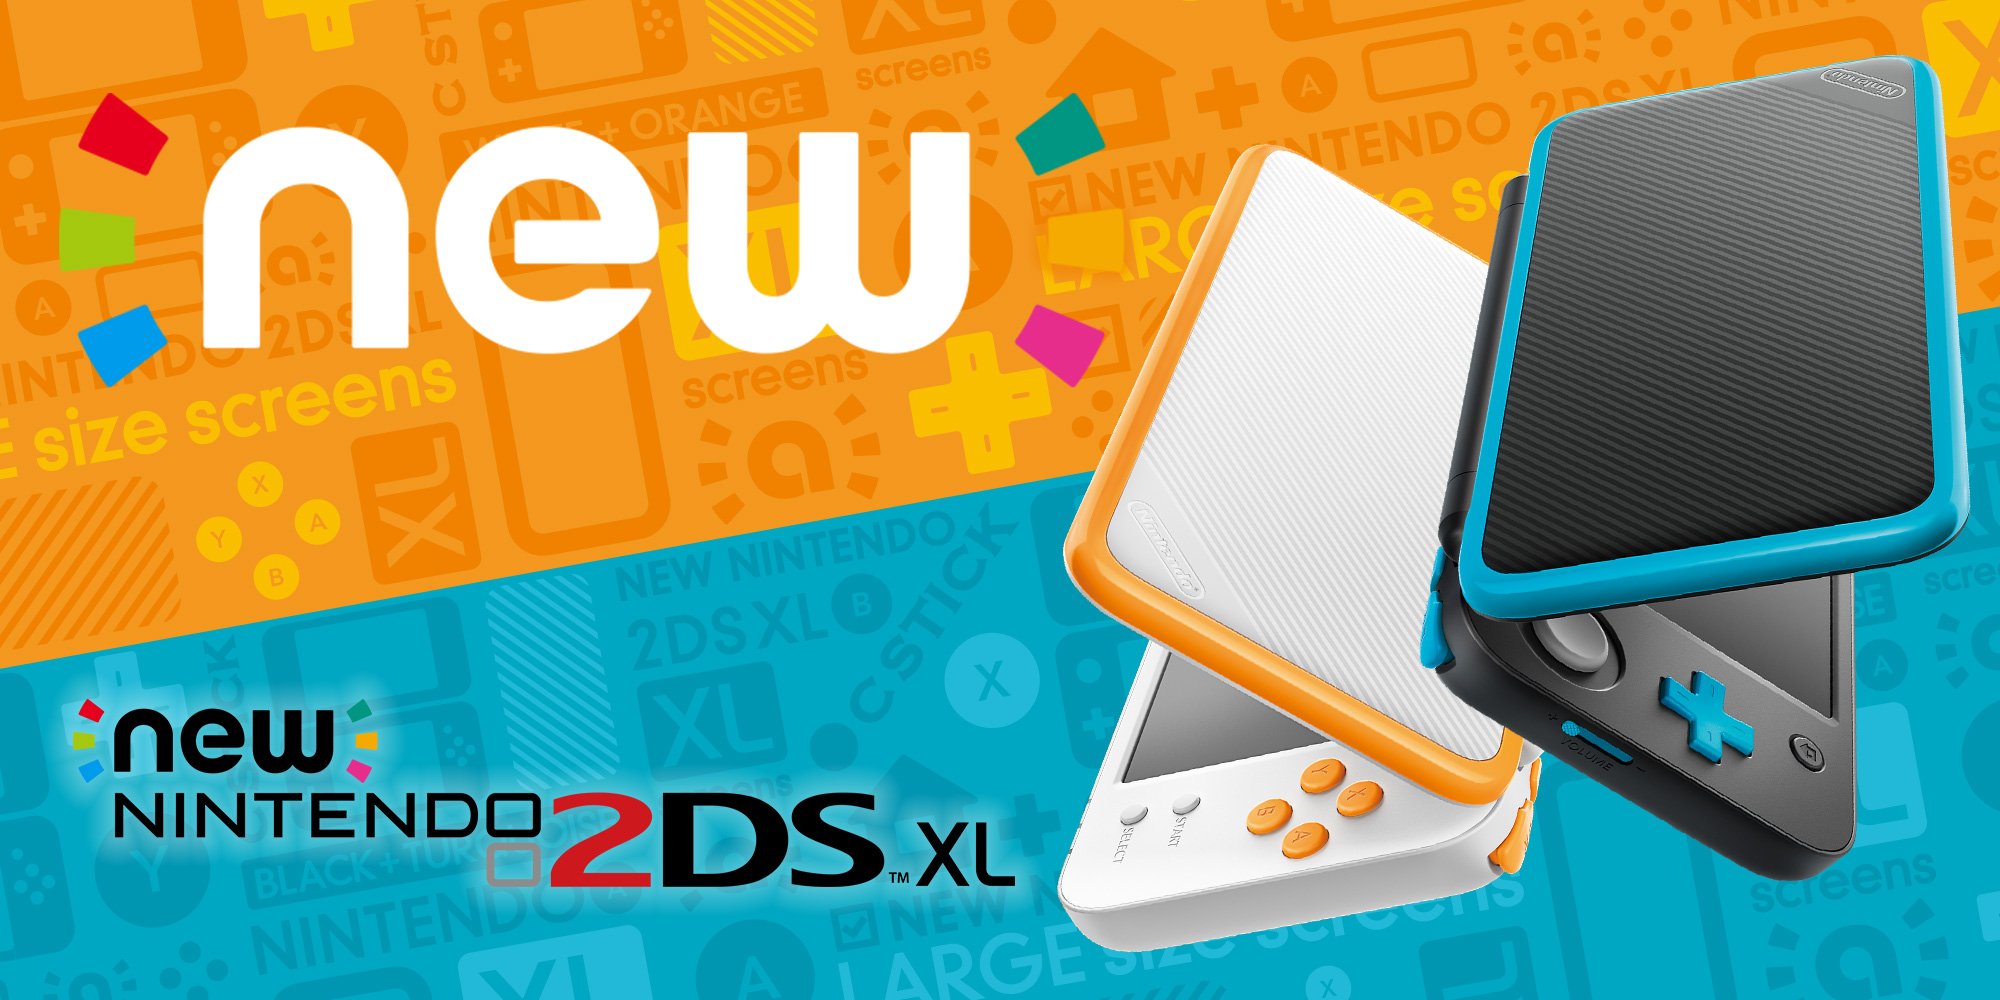 Família de consolas Nintendo 3DS recebe novo membro no dia 28 de julho: New Nintendo 2DS XL!